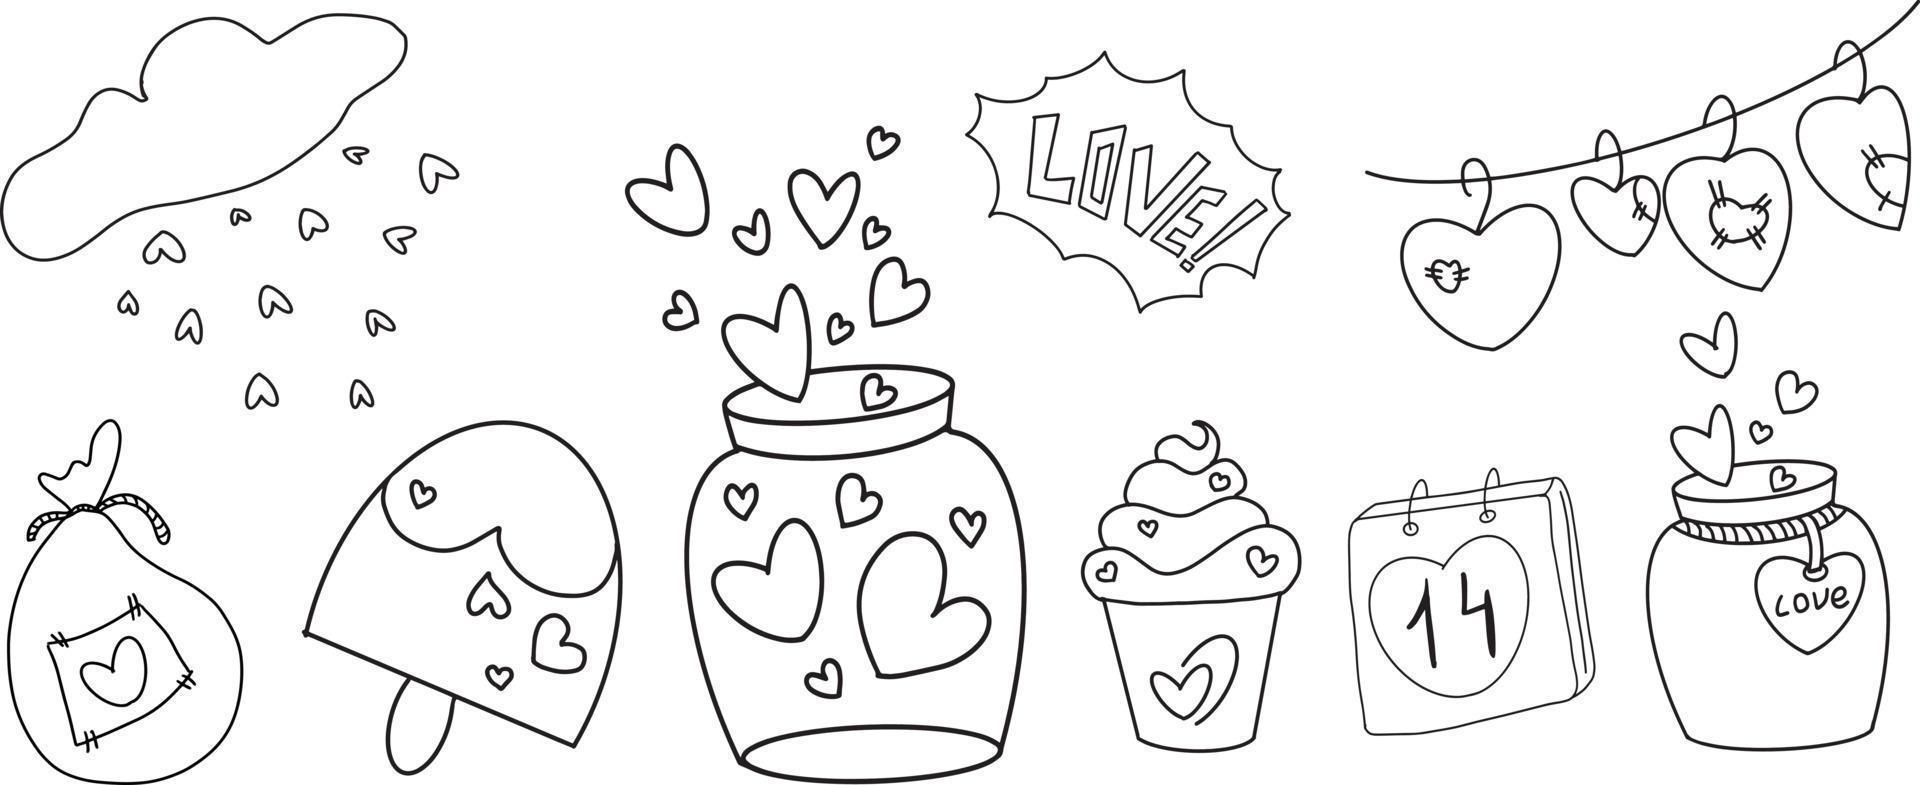 vetor doodle coração preto e branco, amor, sorvete, bolo, navio e guirlanda com corações